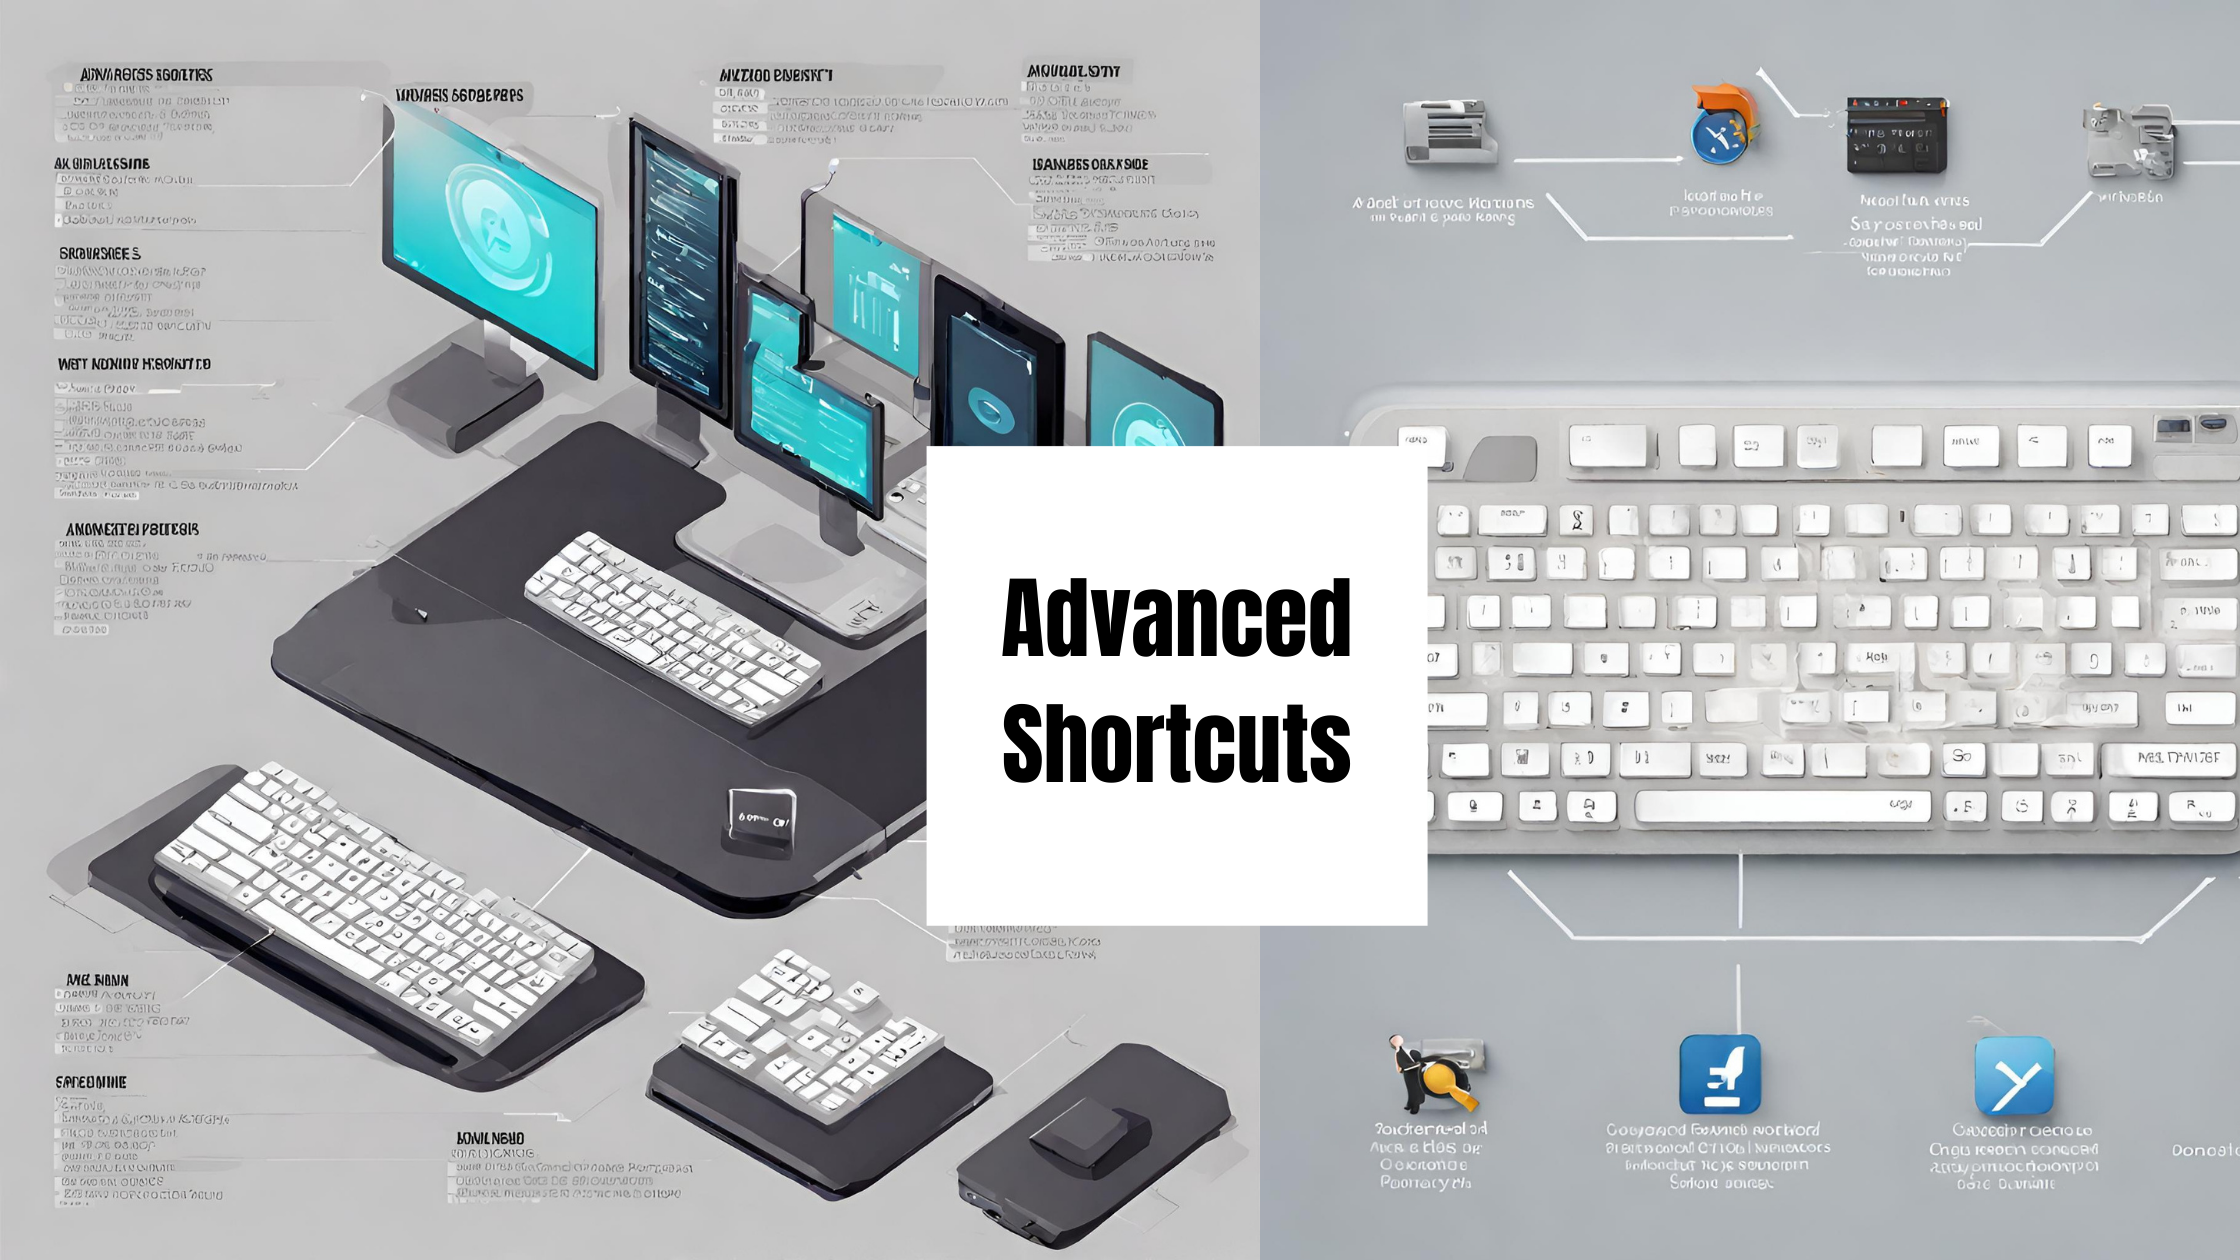 Advanced Shortcuts